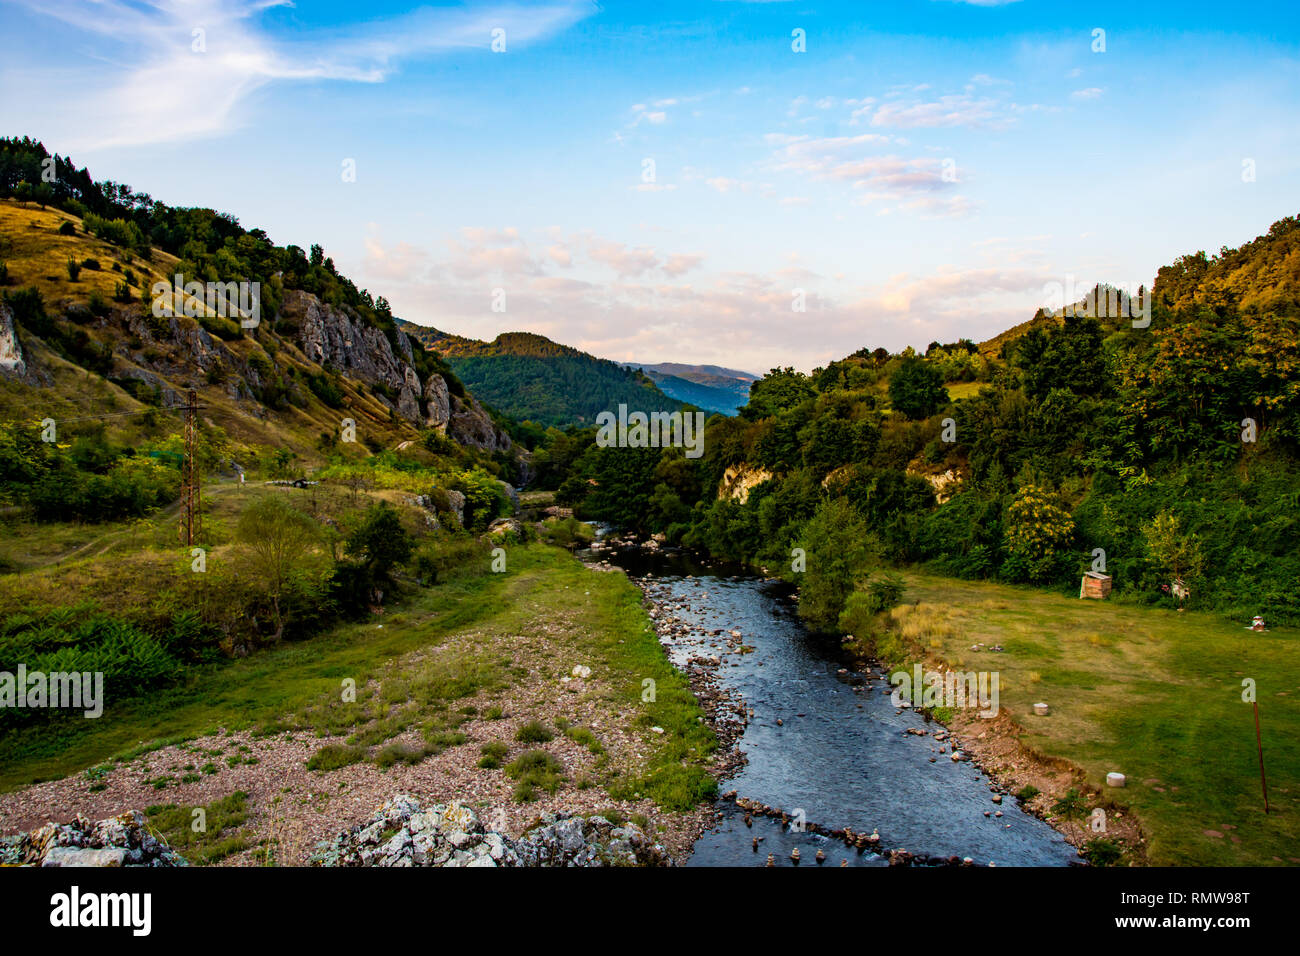 Temstica oder Topli tun Fluß auf einem alten Berg (Stara Planina), in der Nähe von See Zavoj, von dichter Vegetation und Wald umgeben. Stockfoto